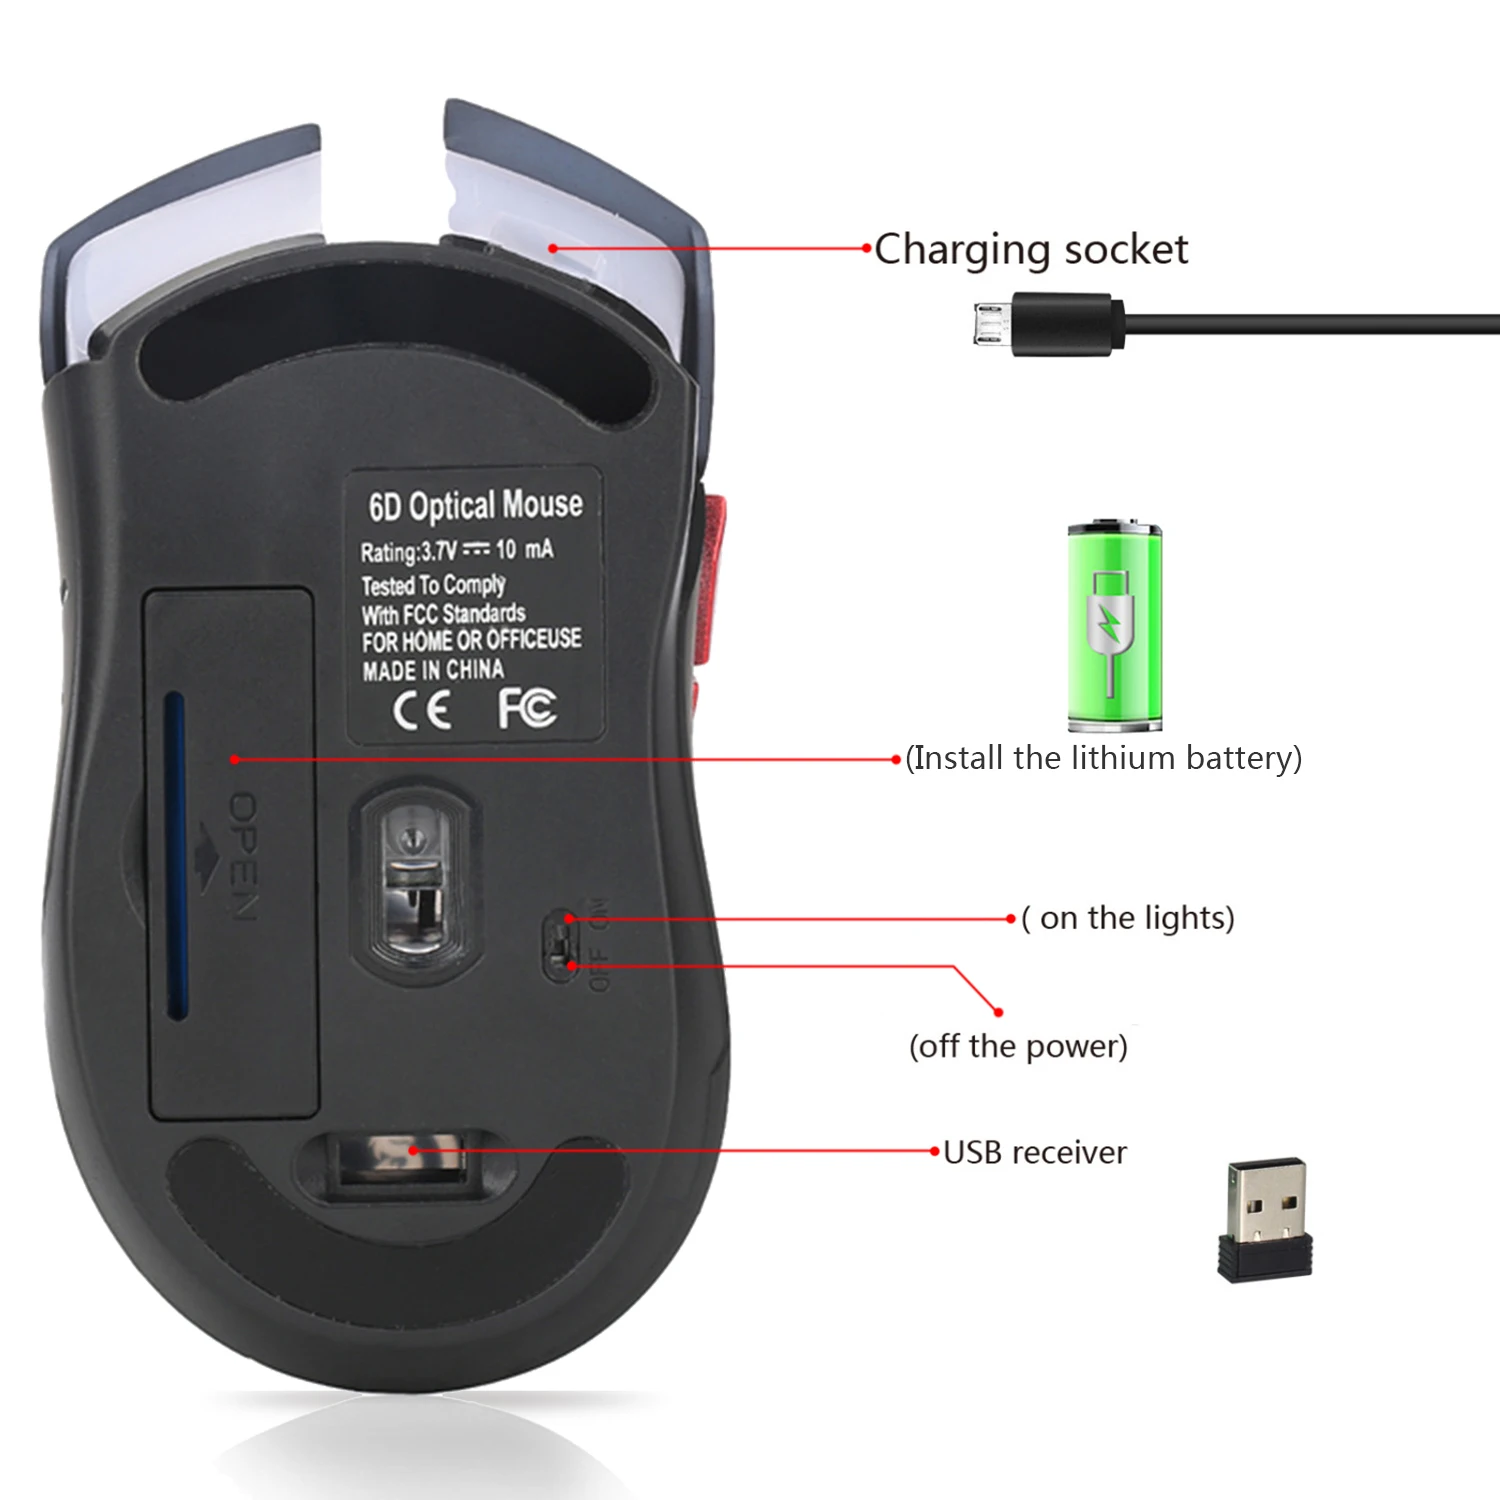 Как заряжать беспроводную мышь. Wireless Optical Mouse с зарядкой от USB. Bm600 с подзарядкой по USB, 2,4 ГГЦ мышь. Как заряжать беспроводную мышь Wireless Mouse. Как зарядить мышку беспроводную.